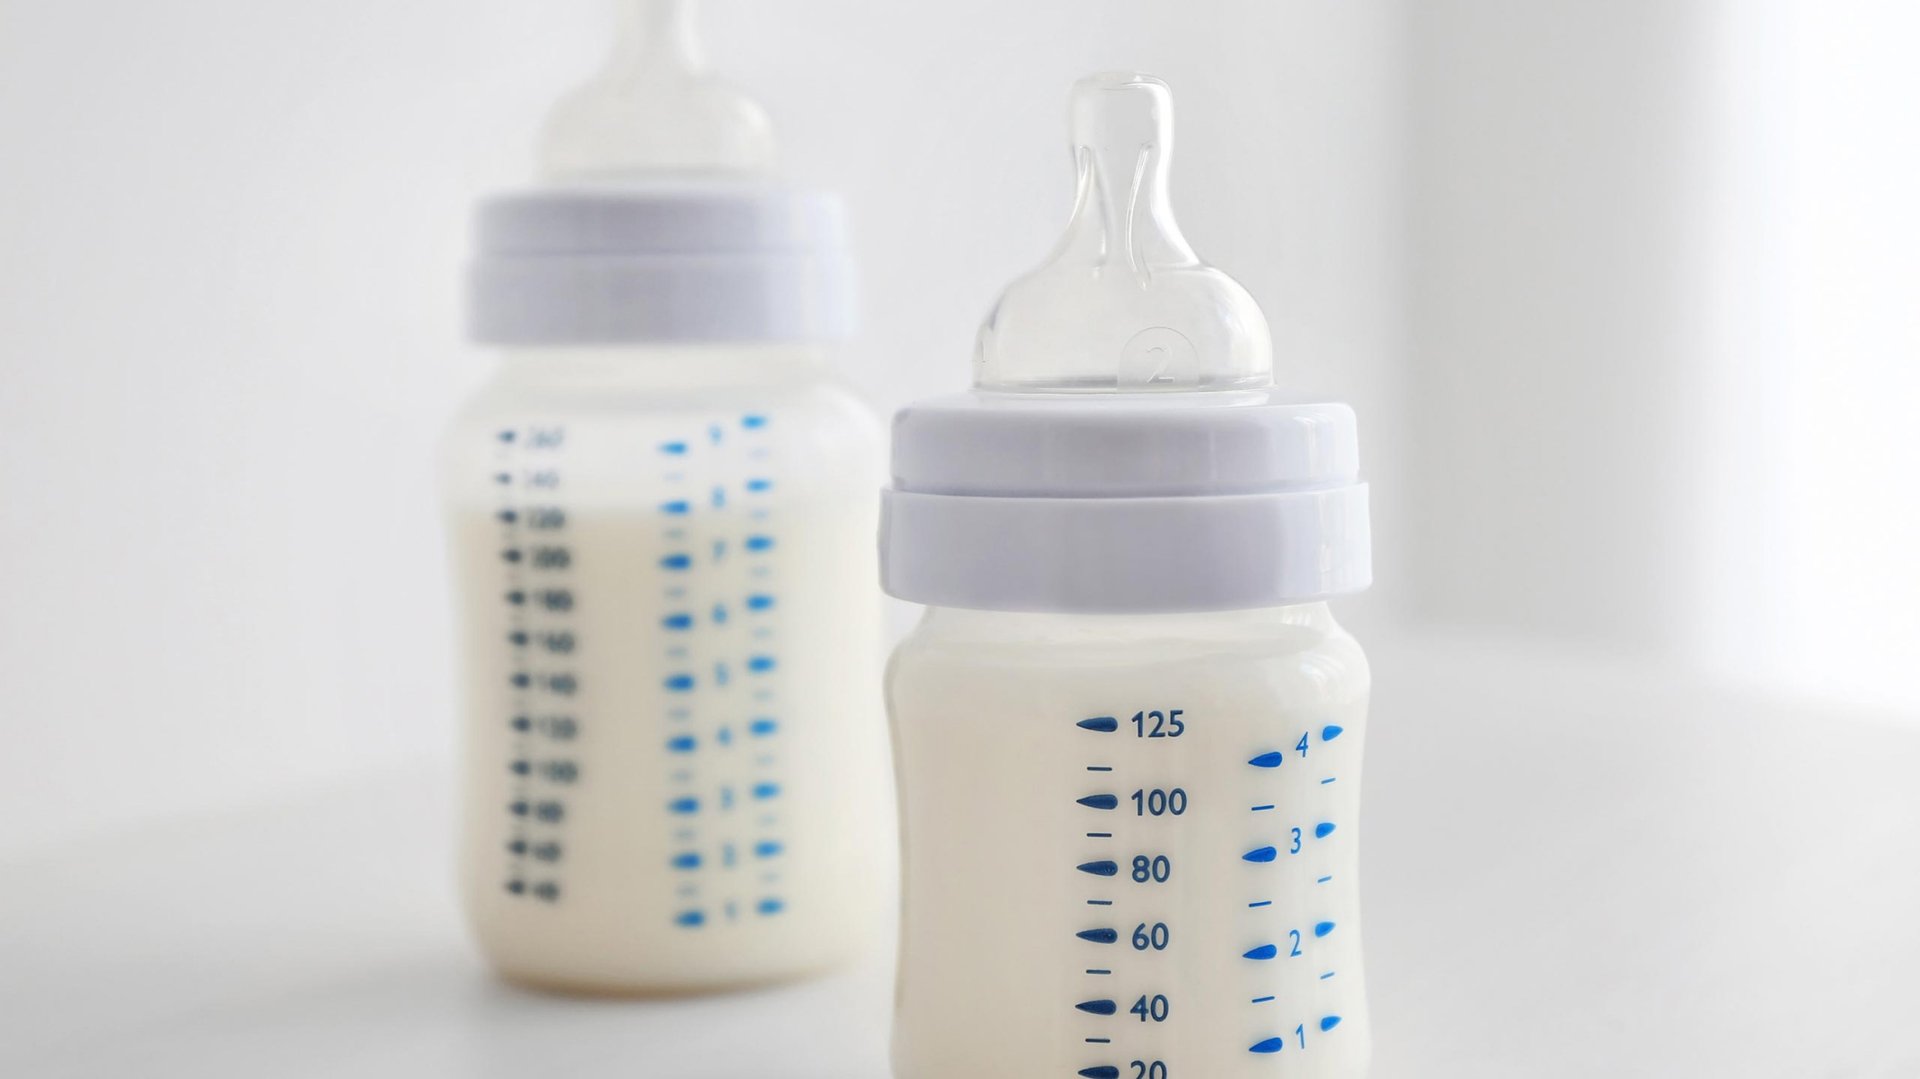 Dzie pelne butelki mleka dla dziecka stoja na stole